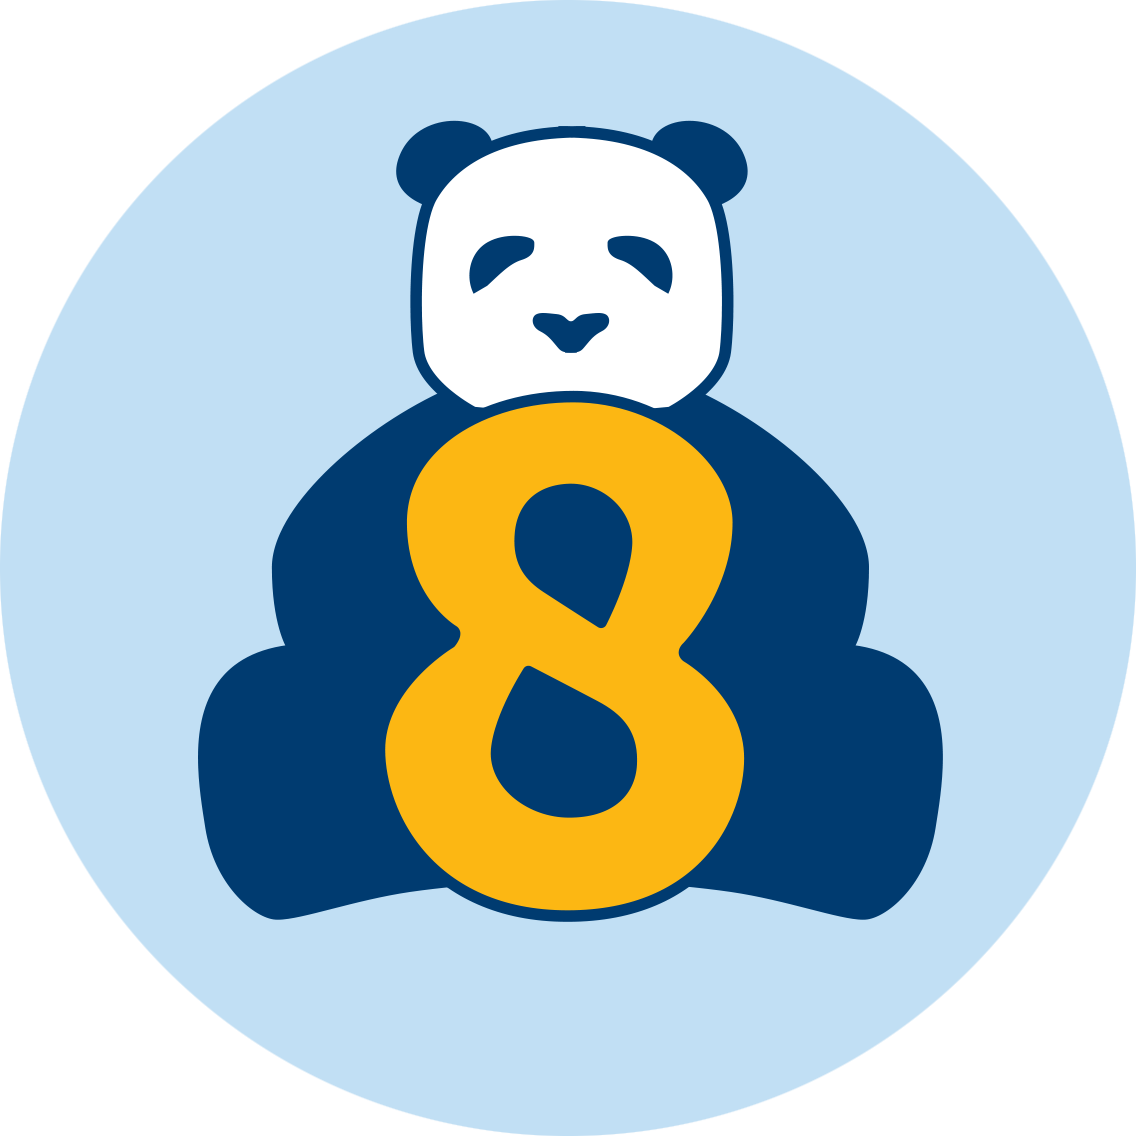 一只熊猫坐在数字8后面。